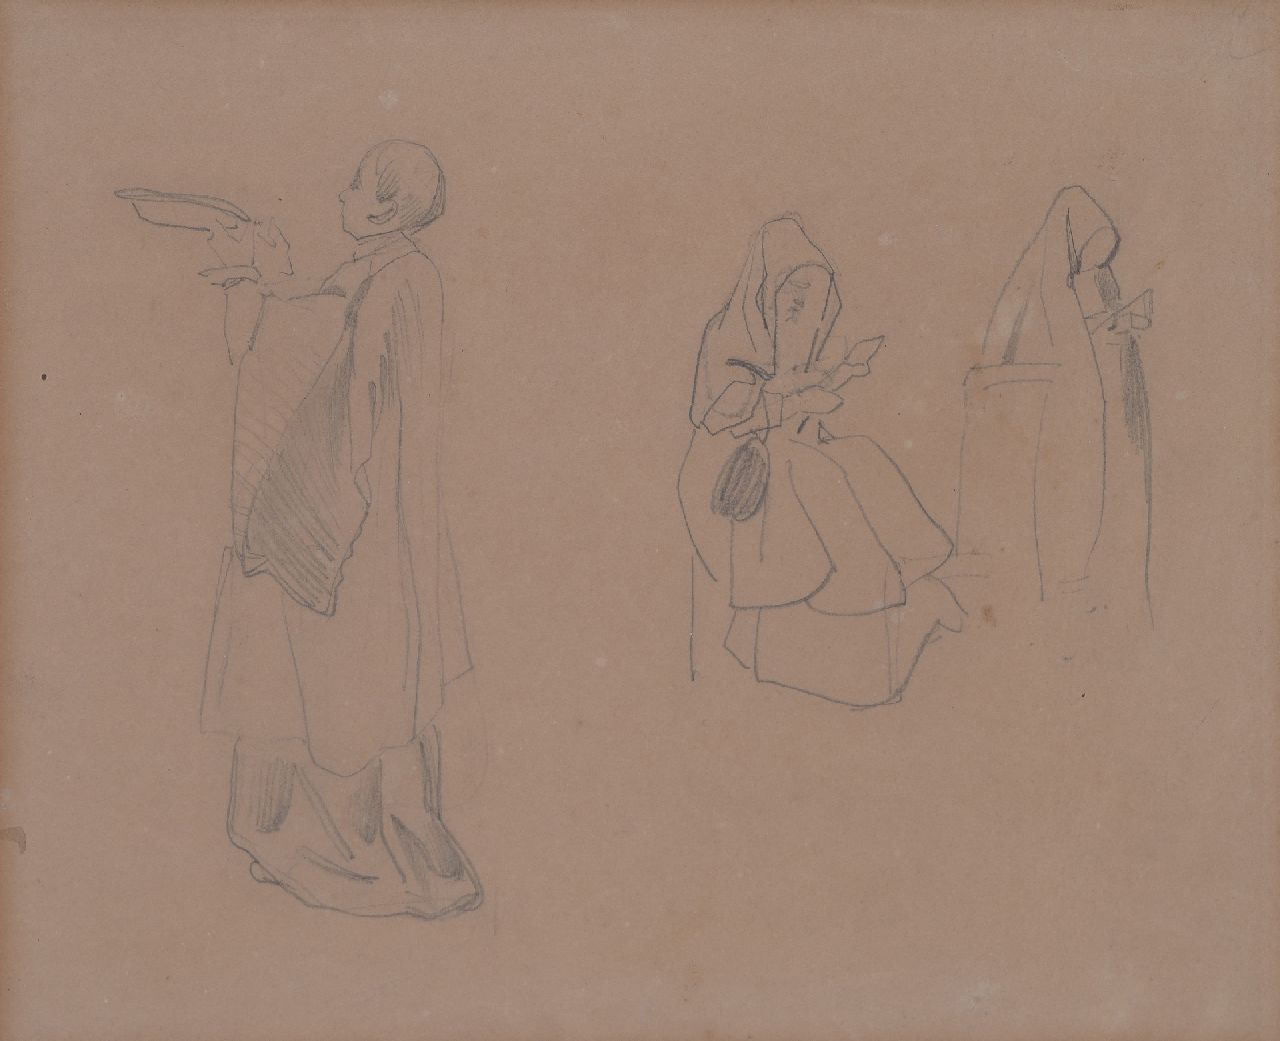 Bosboom J.  | Johannes Bosboom, Studie van kloosterling en nonnen, potlood op papier 20,8 x 26,1 cm